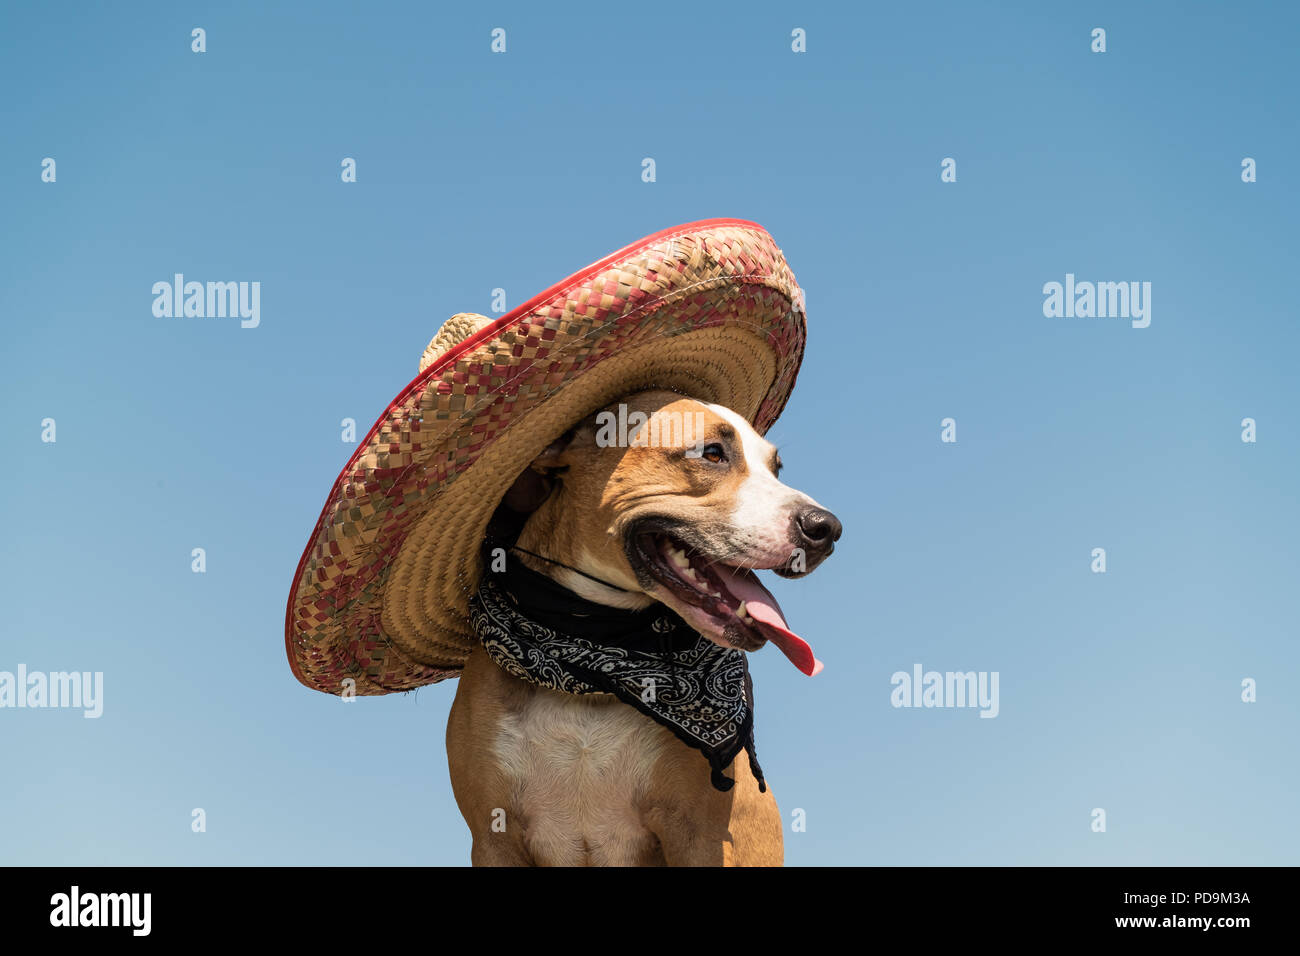 Schöner Hund in Mexican hat als im westlichen Stil Bandit der Gangster.  Cute funny Staffordshire Terrier gekleidet in sombrero Hut wie Mexiko  festliche Symb Stockfotografie - Alamy